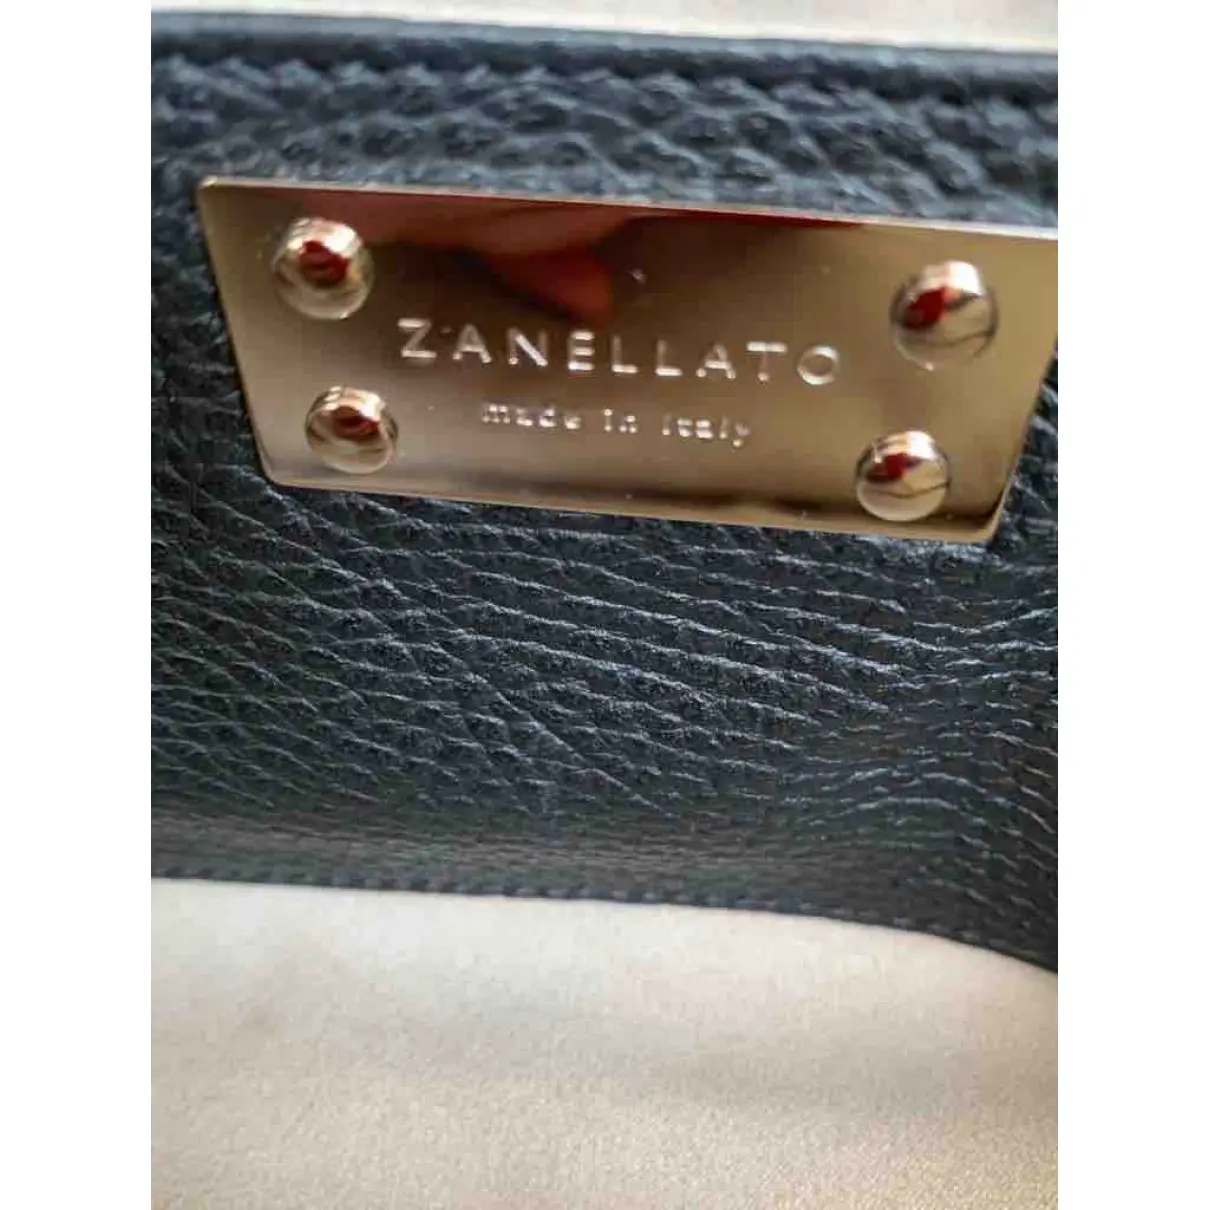 Leather crossbody bag Zanellato